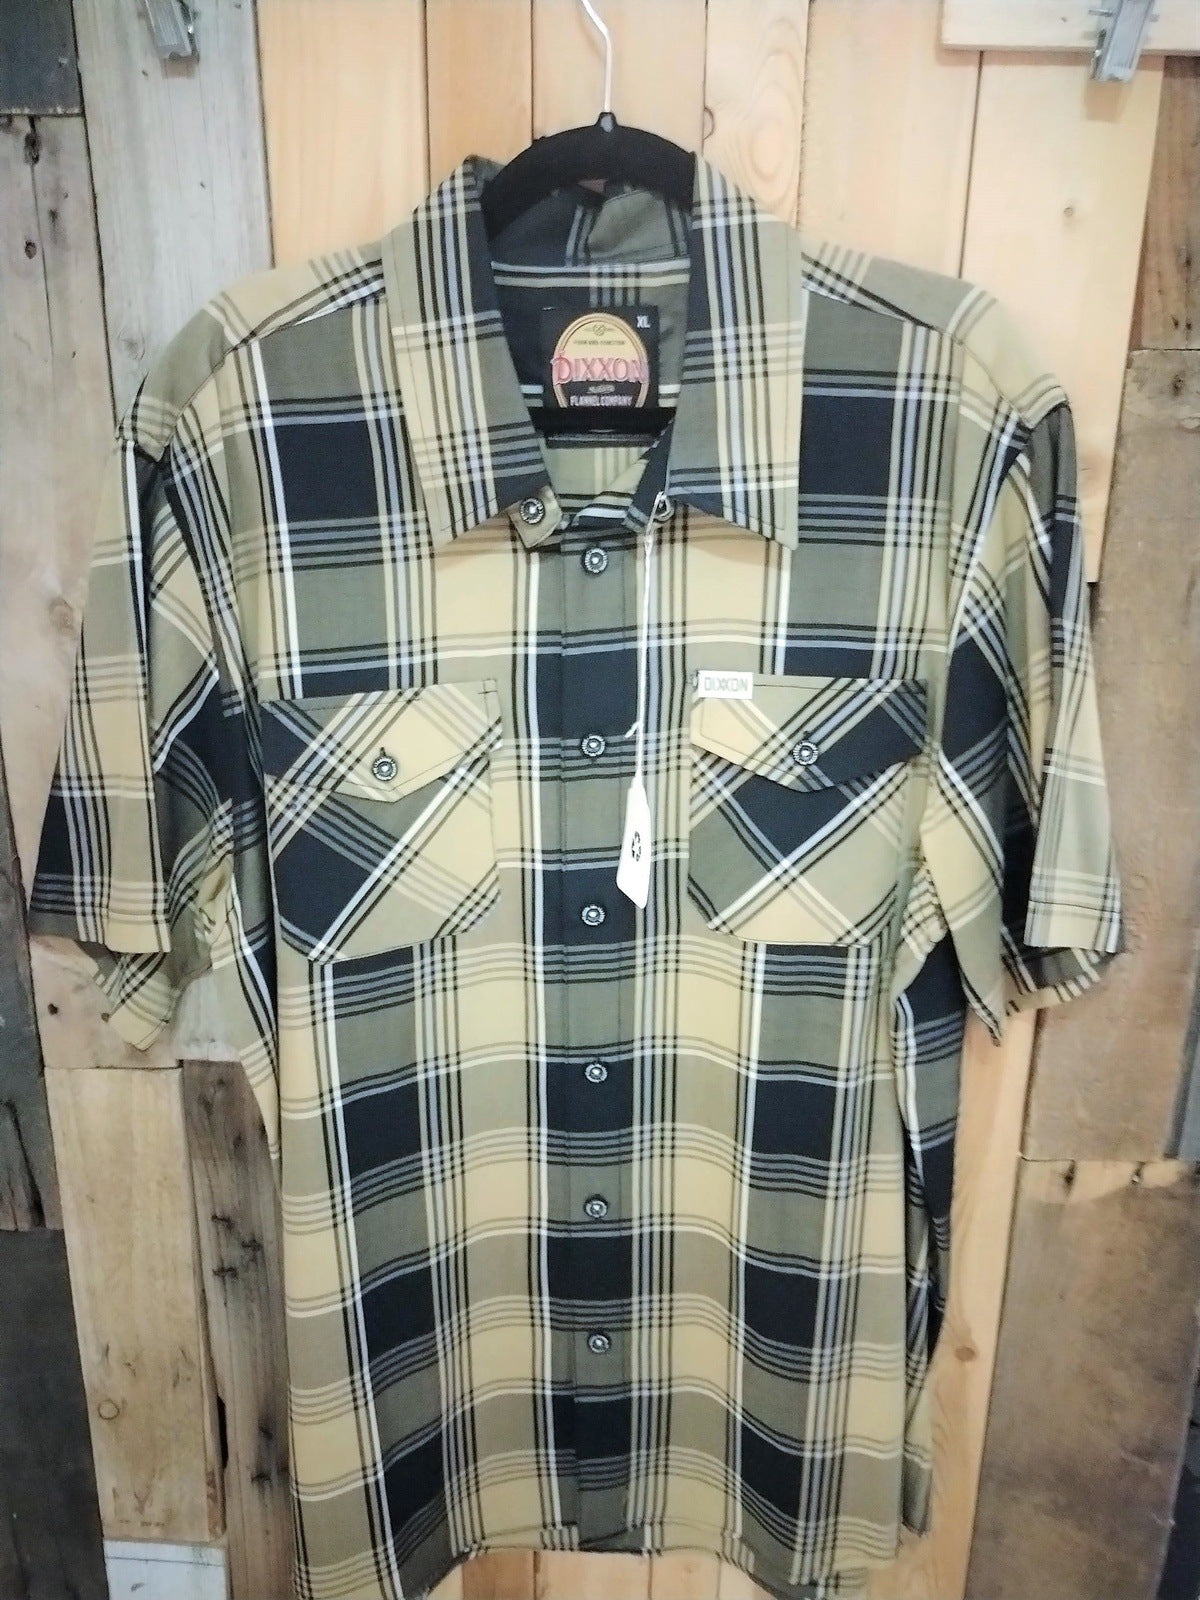 Dixxon Flannel Company Men's Short Sleeve Button Up "Drexyl" Plaid Shirt Size XL